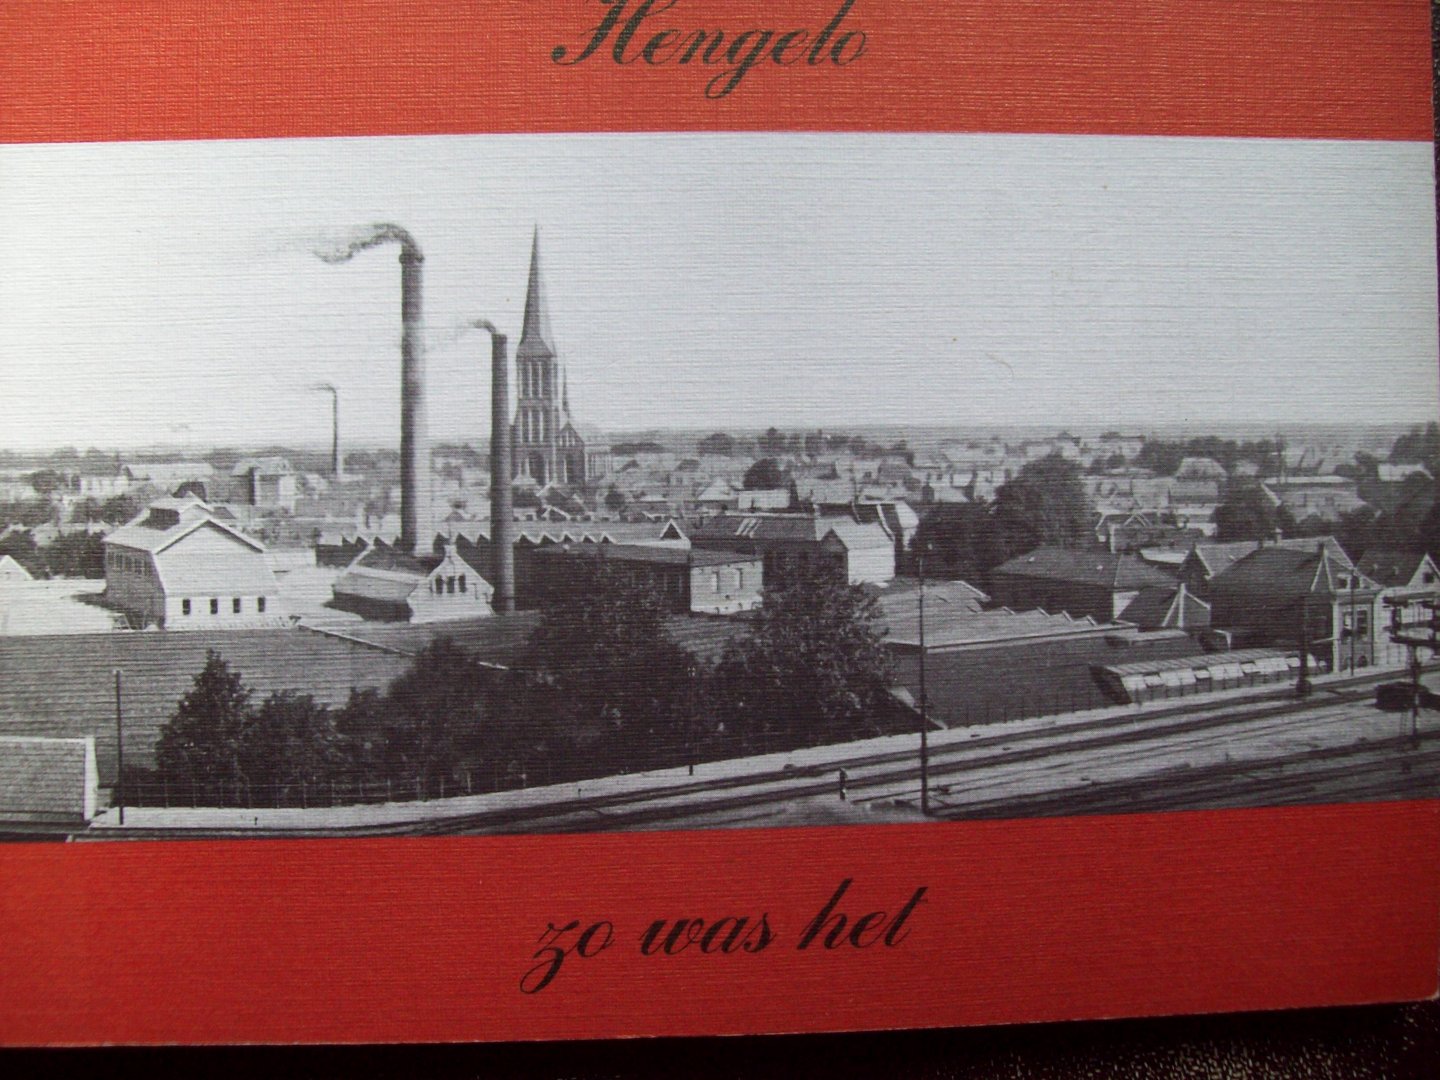 Th. L.M. van Stapele - "Hengelo zo was het"  Prentbriefkaarten met tekst.